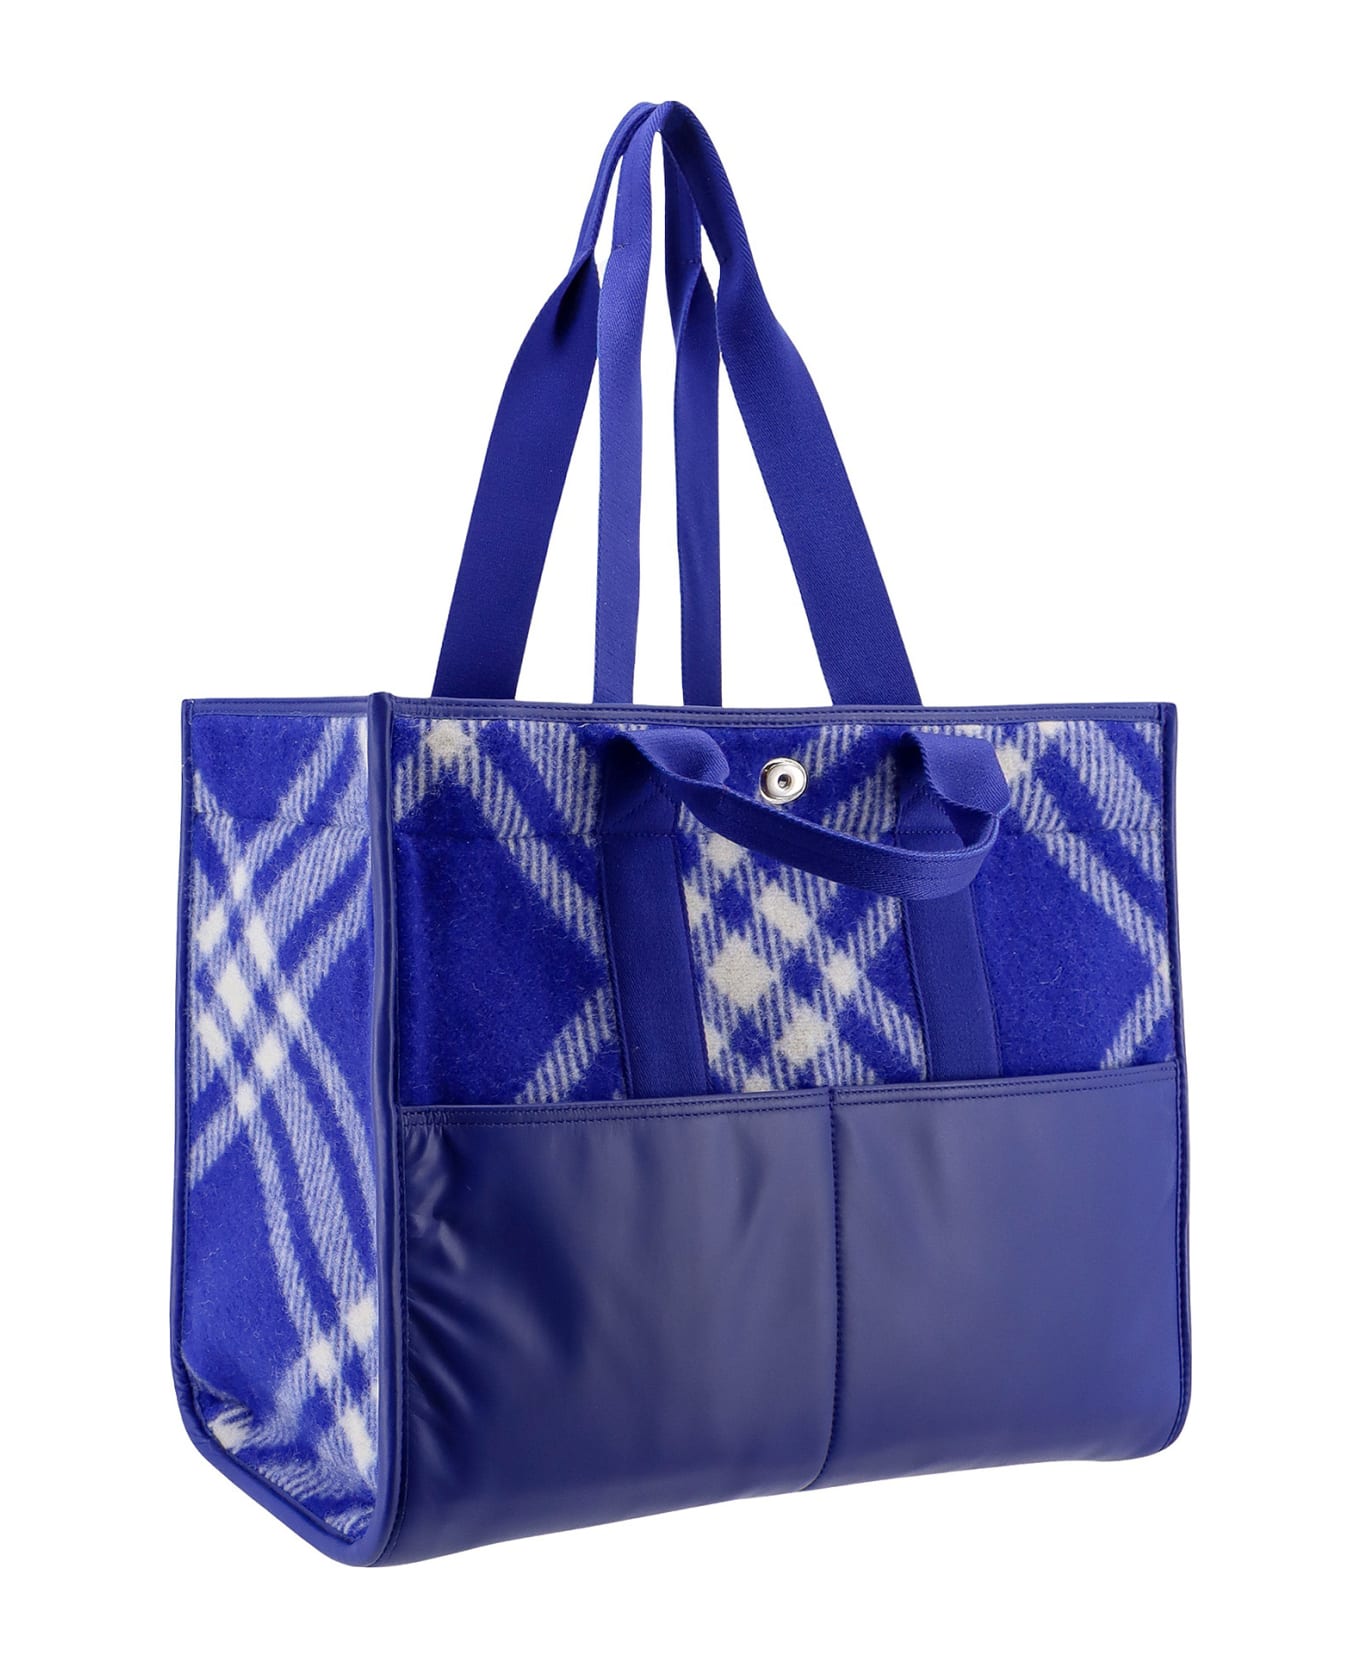 Burberry Shopper Tote Handbag - Blue トートバッグ